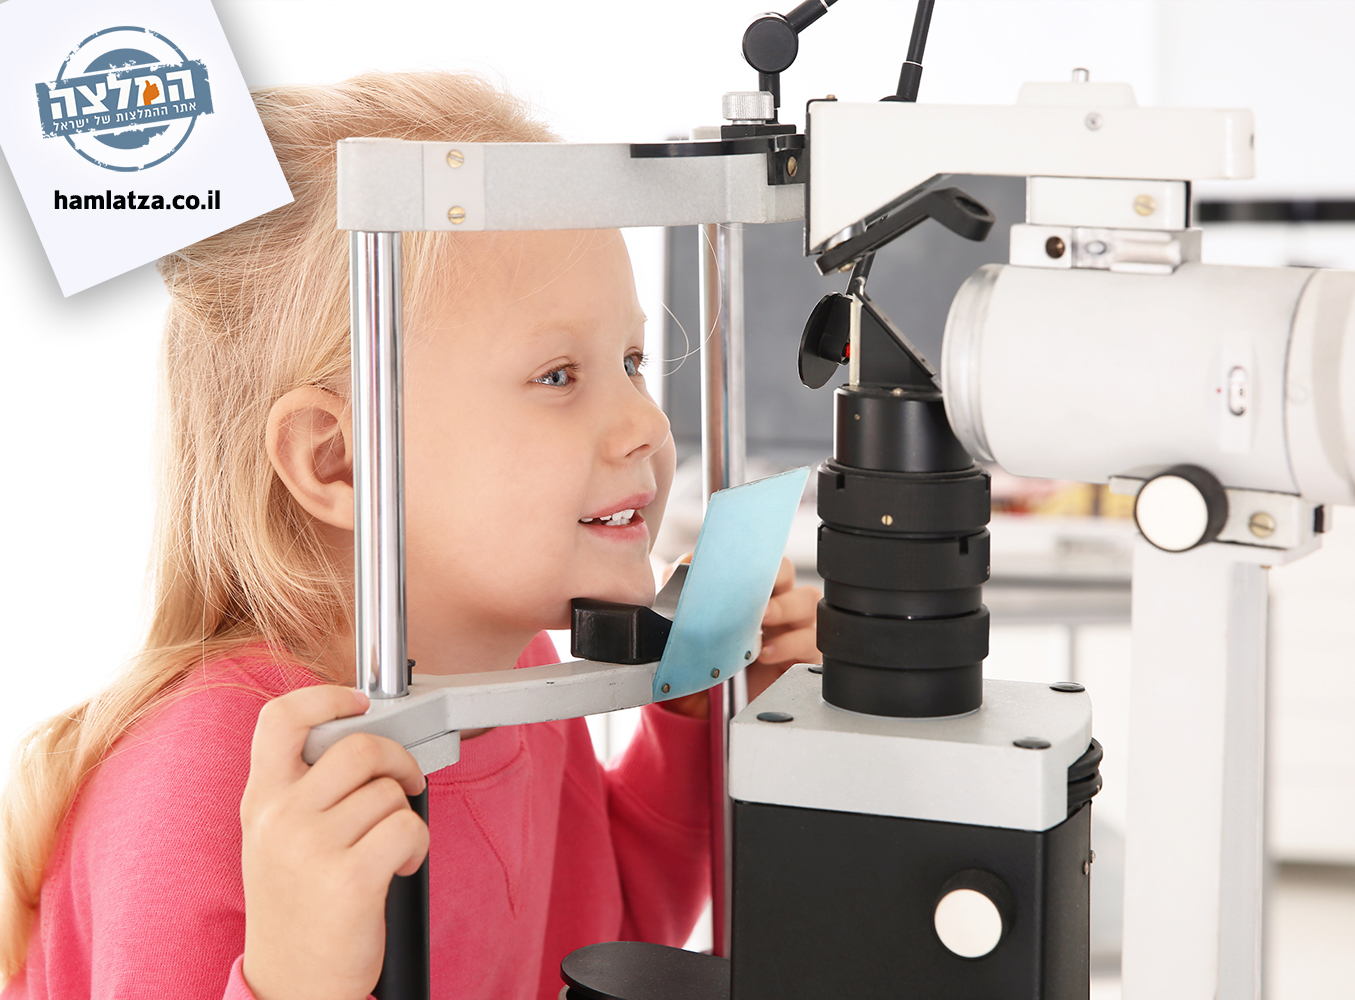 עשיתם כבר בדיקת עיניים לילד/ה? חשיבות בדיקה תקופתית